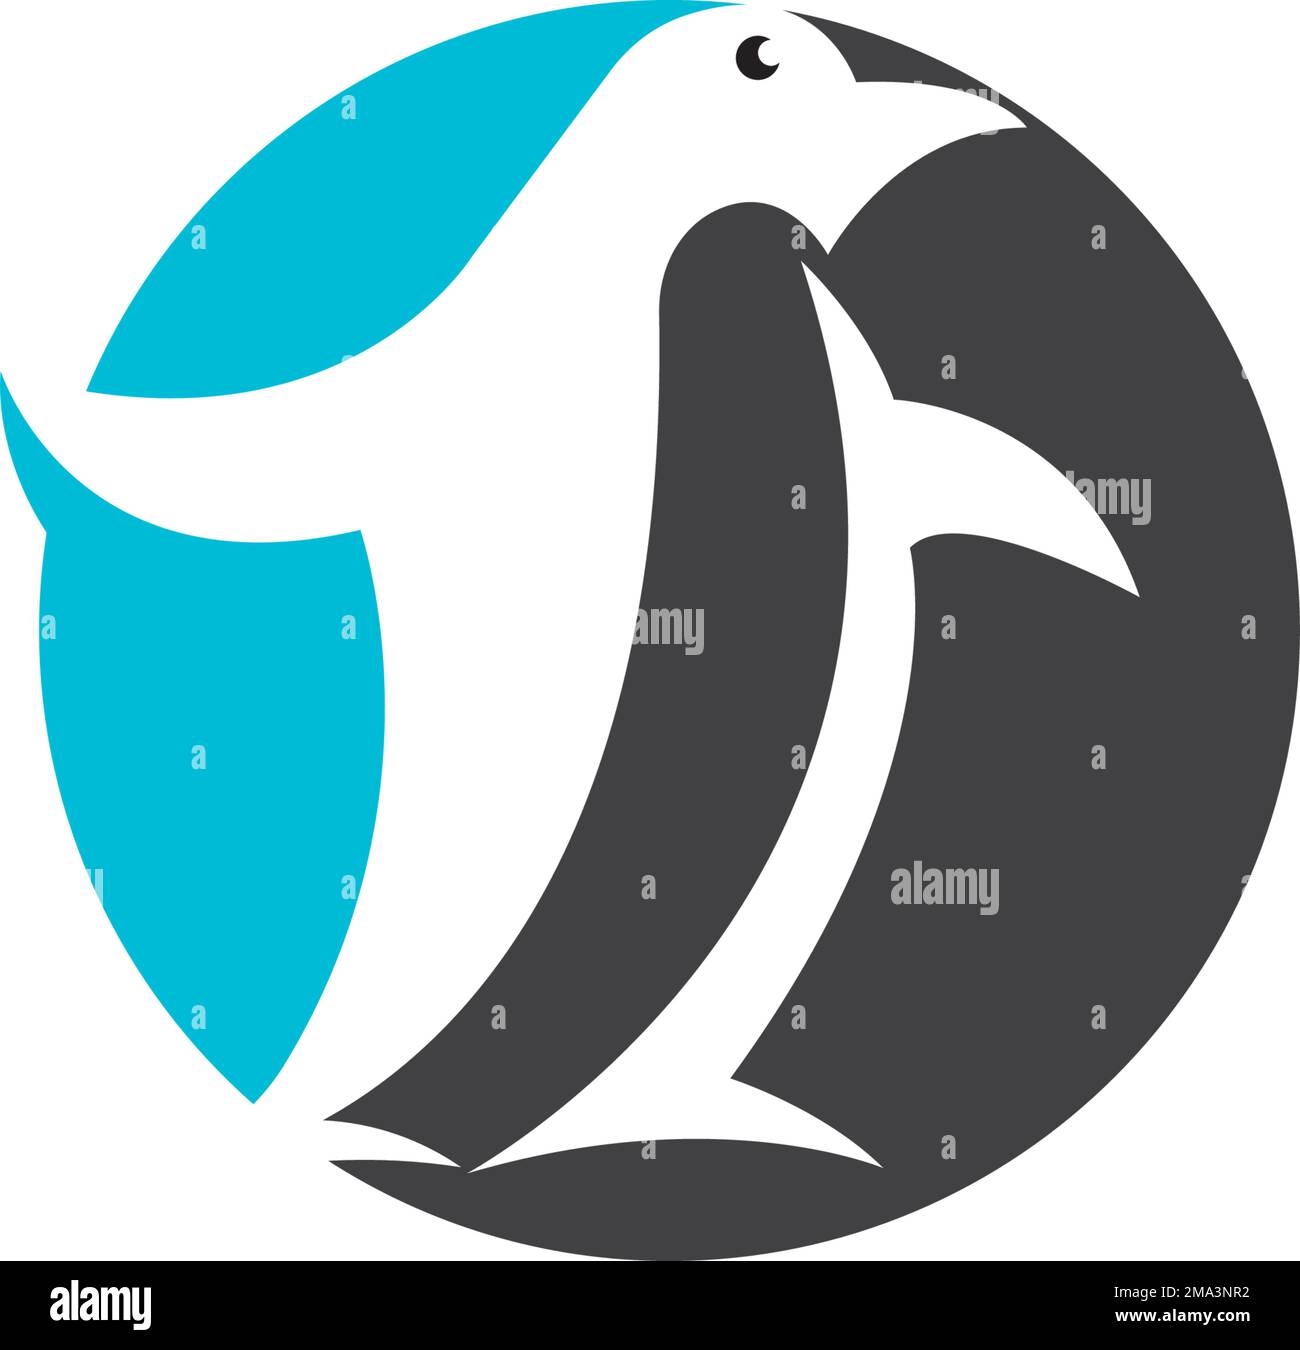 motif représentant un logo représentant une illustration vectorielle représentant un pingouin Illustration de Vecteur